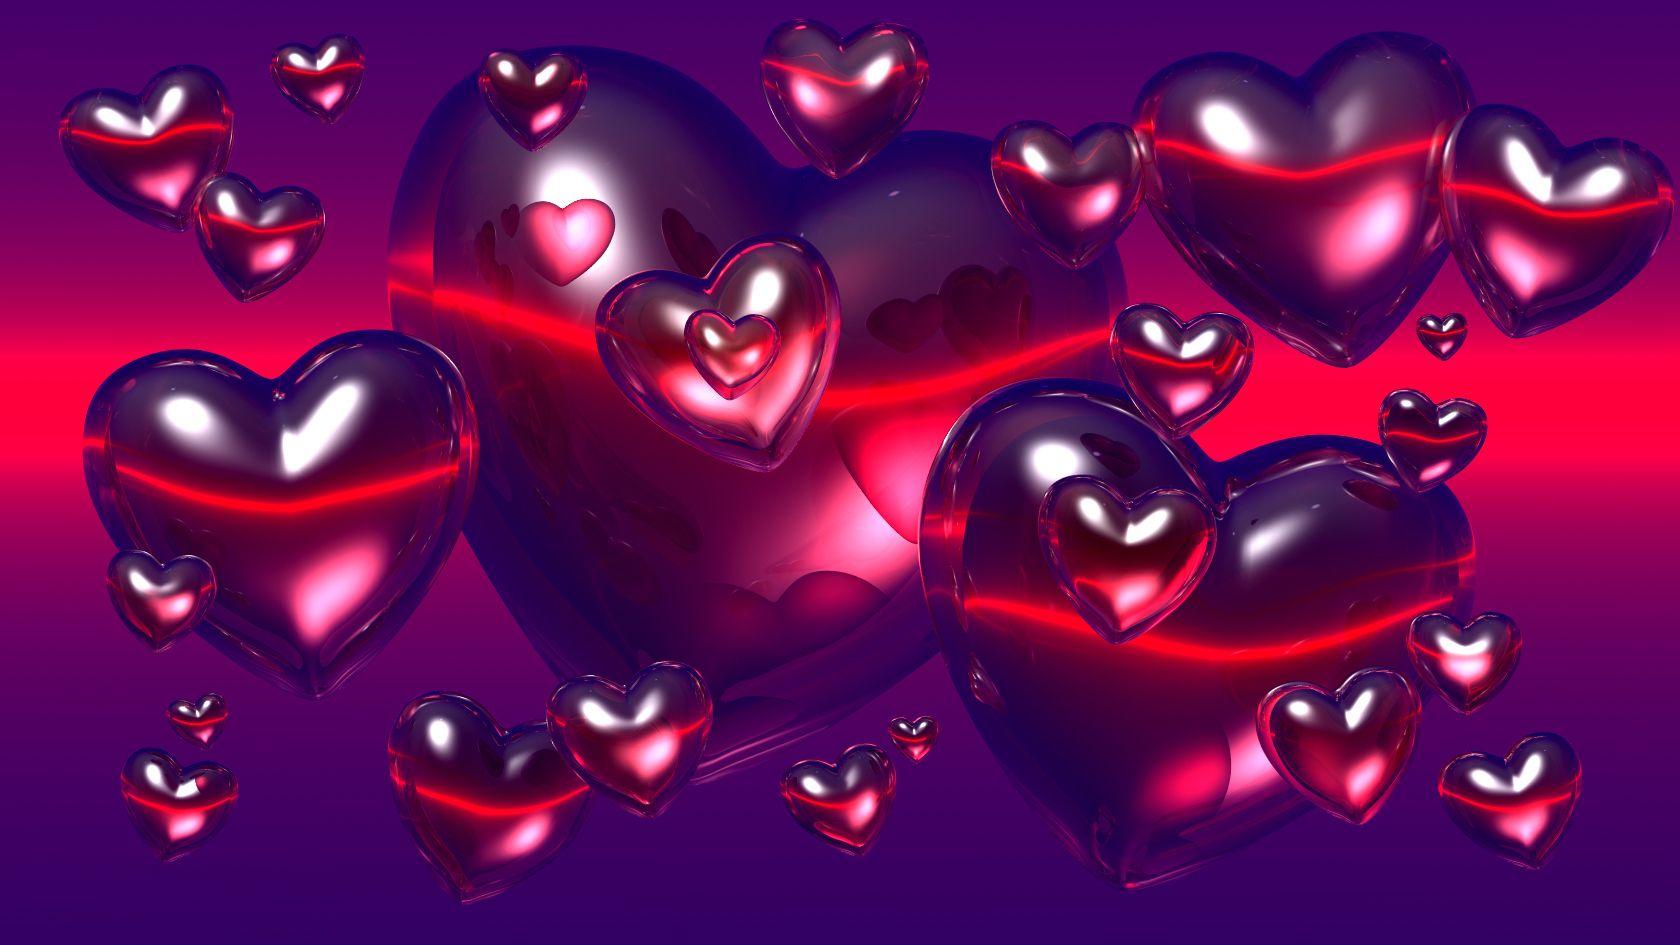 3D Wallpaper Of Love Hearts 3D Heart Wallpaper